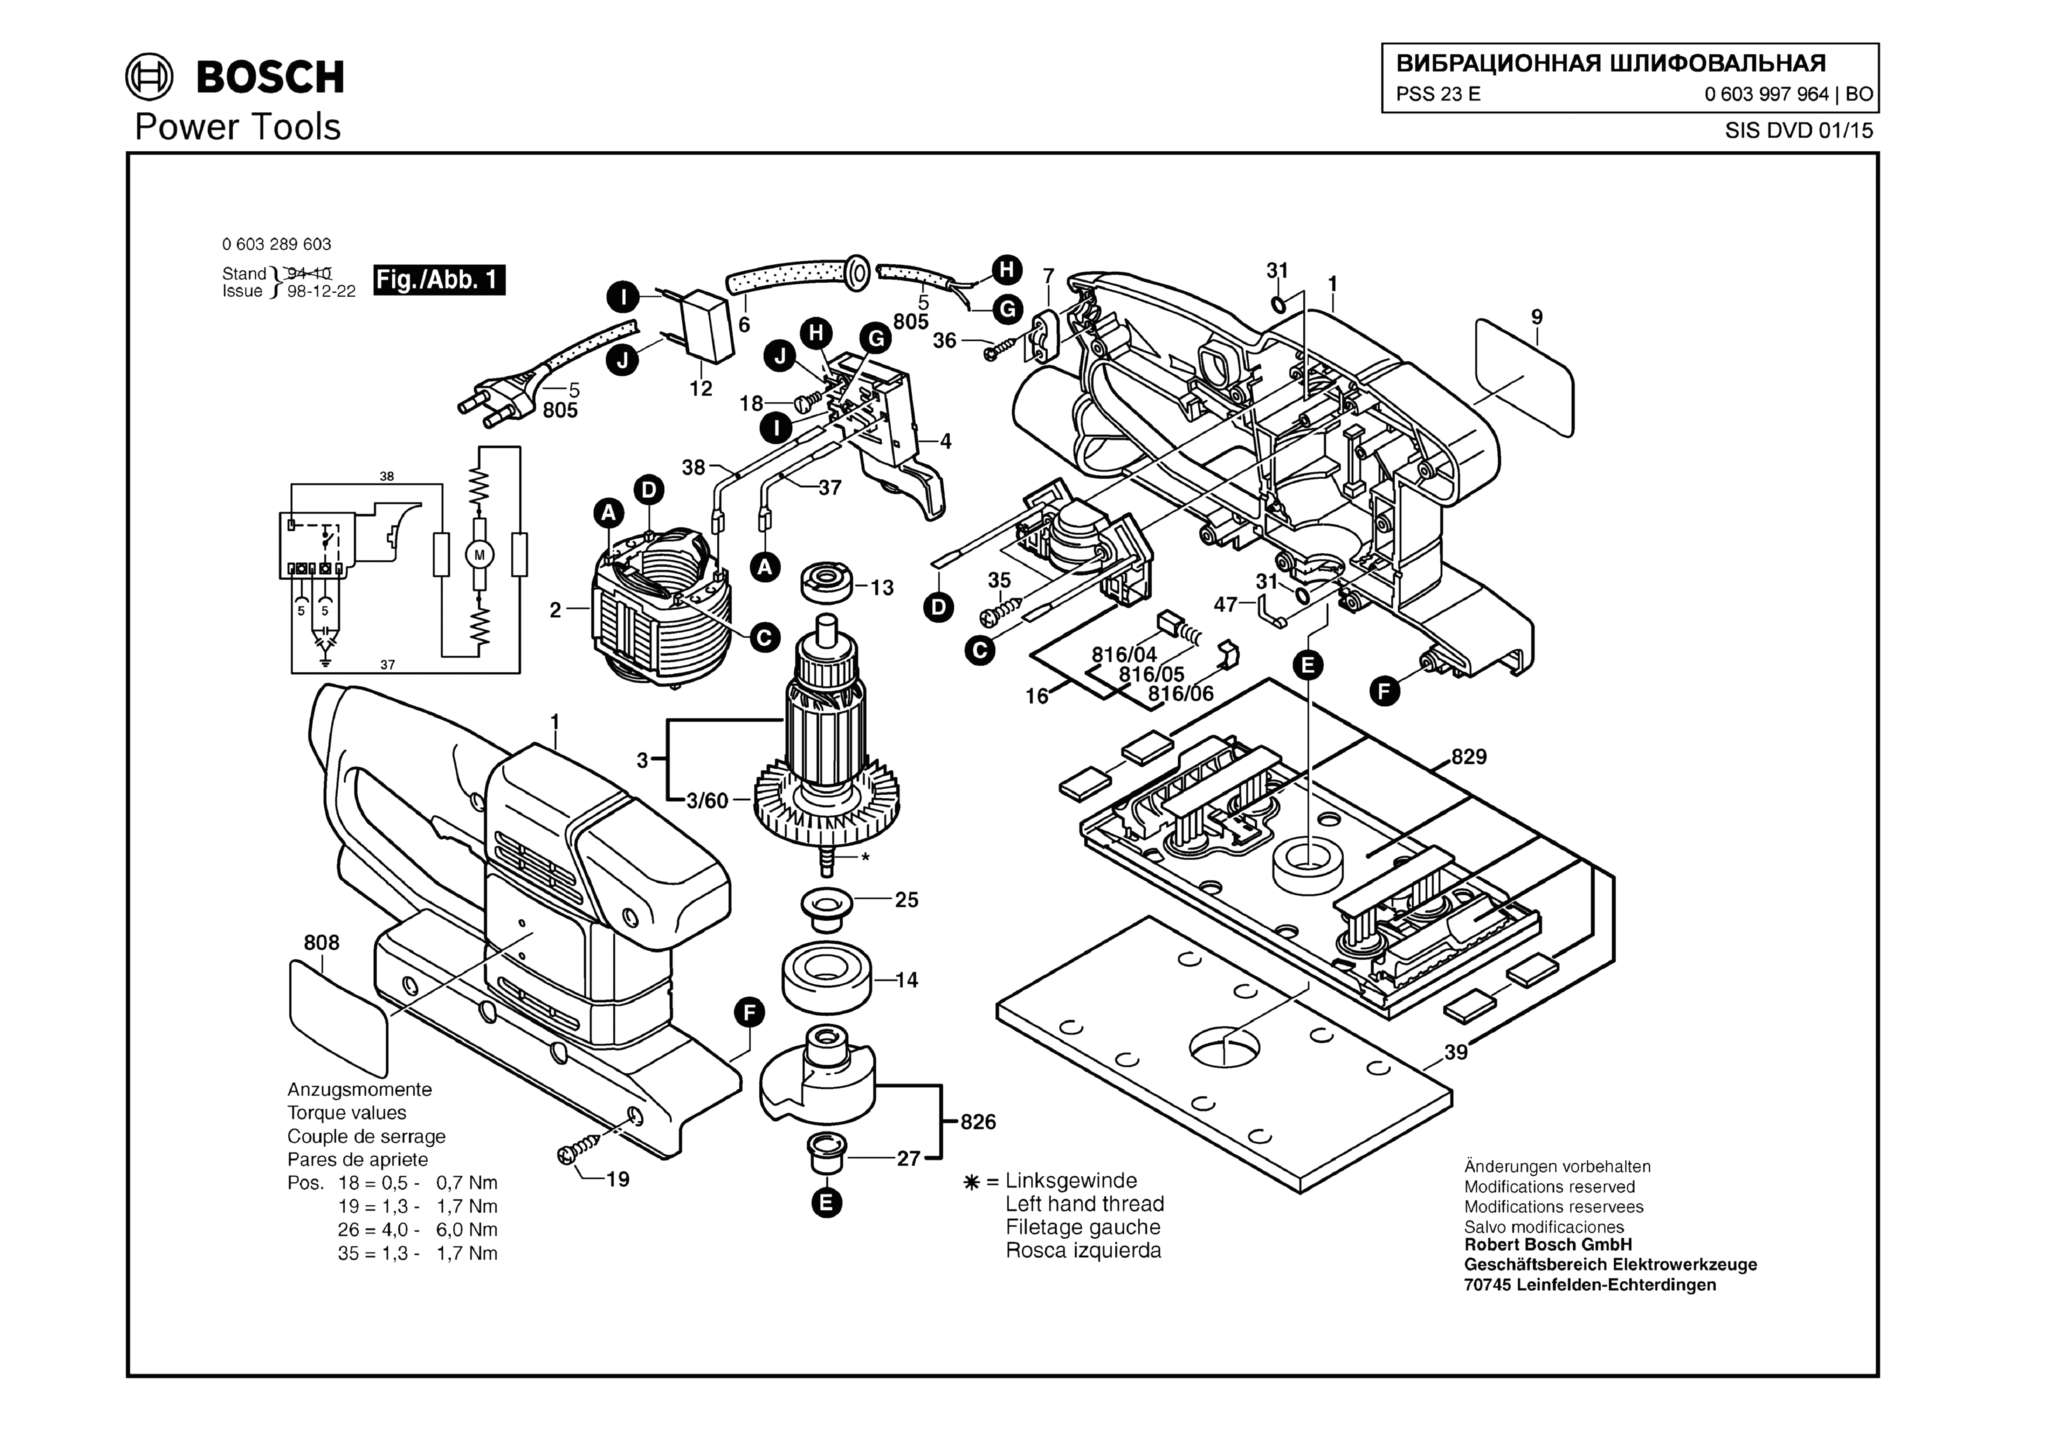 Запчасти, схема и деталировка Bosch PSS 23 E (ТИП 0603997964)